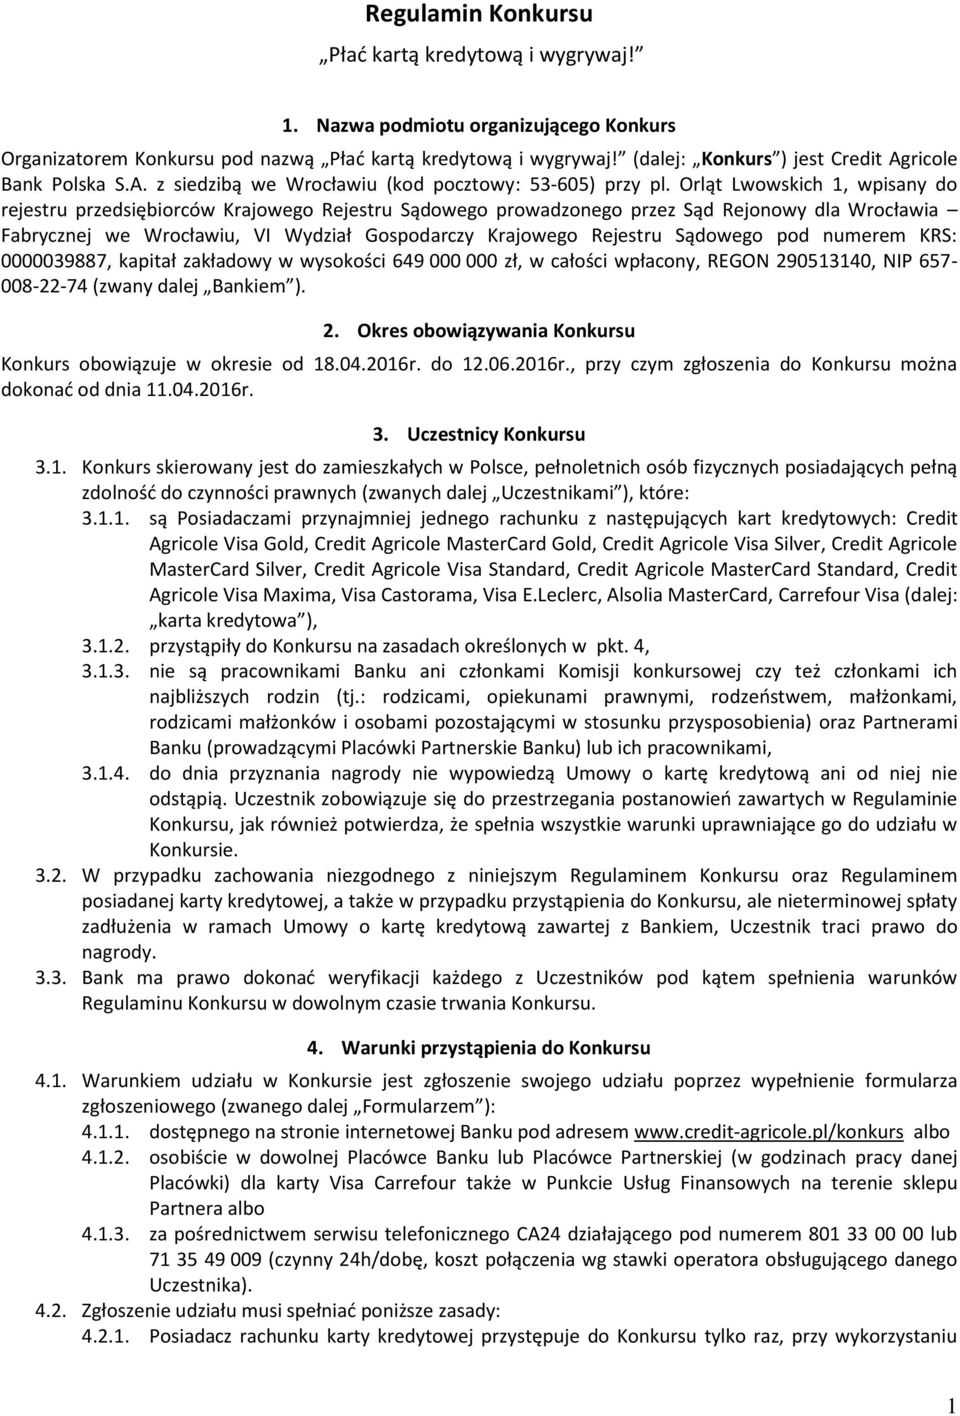 Orląt Lwowskich 1, wpisany do rejestru przedsiębiorców Krajowego Rejestru Sądowego prowadzonego przez Sąd Rejonowy dla Wrocławia Fabrycznej we Wrocławiu, VI Wydział Gospodarczy Krajowego Rejestru